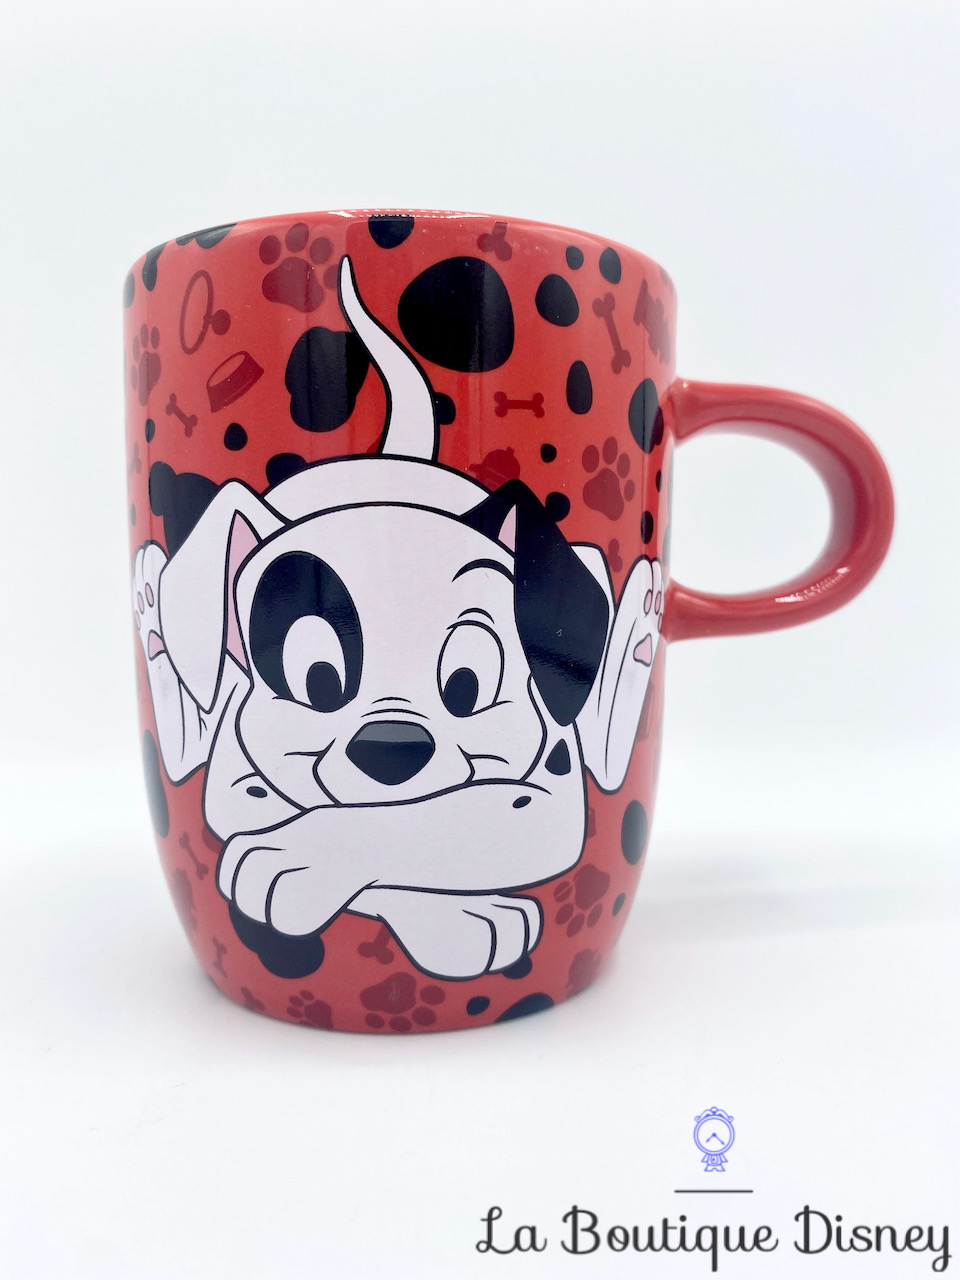 Tasse 101 Dalmatians Disney Store mug rouge noir Les 101 Dalmatiens chien